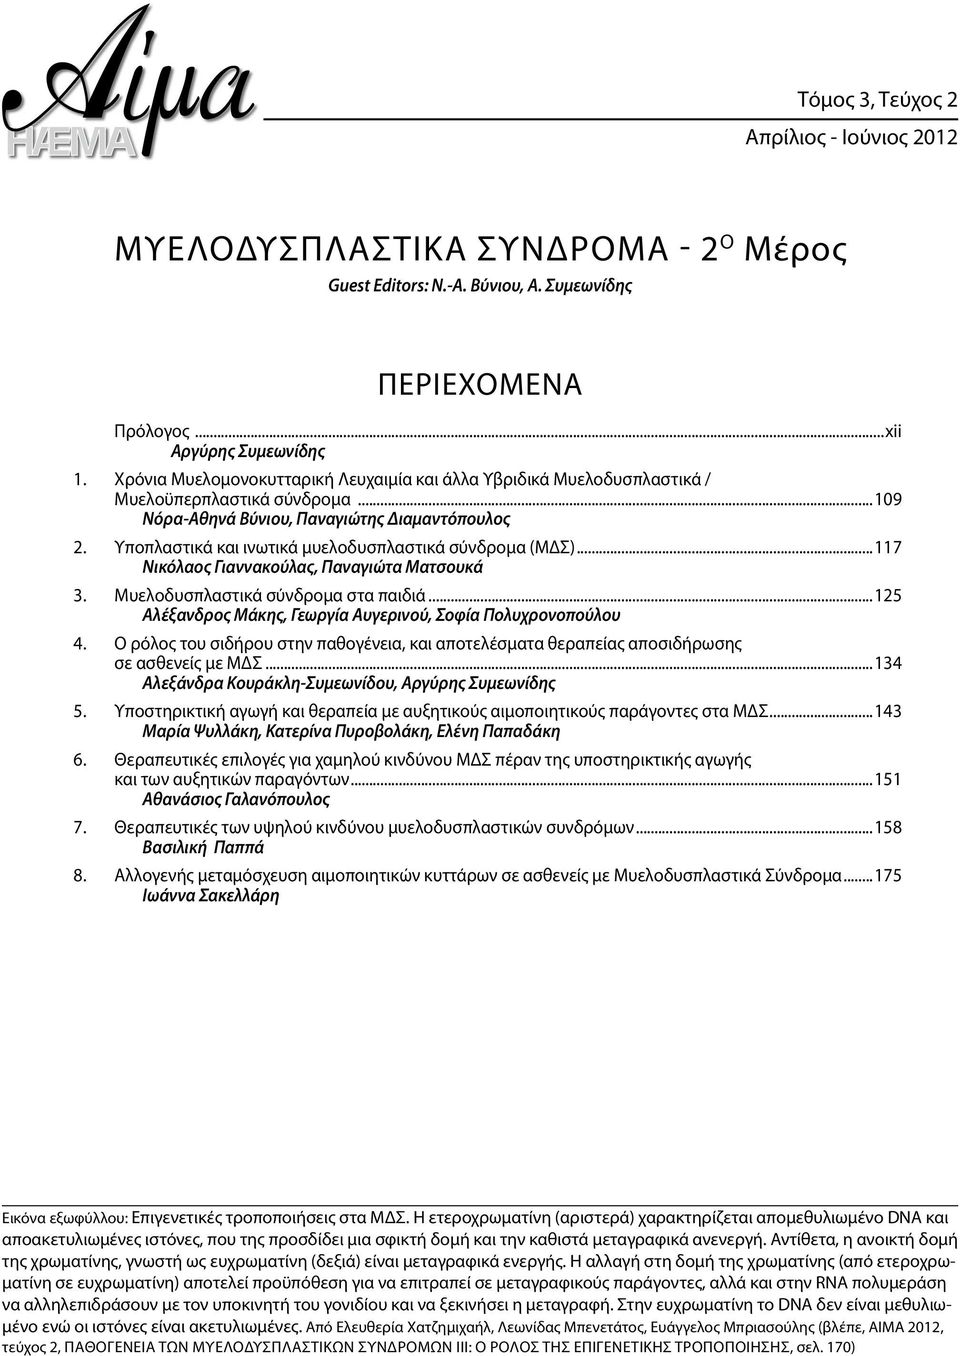 Υποπλαστικά και ινωτικά μυελοδυσπλαστικά σύνδρομα (ΜΔΣ)...117 Νικόλαος Γιαννακούλας, Παναγιώτα Ματσουκά 3. Μυελοδυσπλαστικά σύνδρομα στα παιδιά.